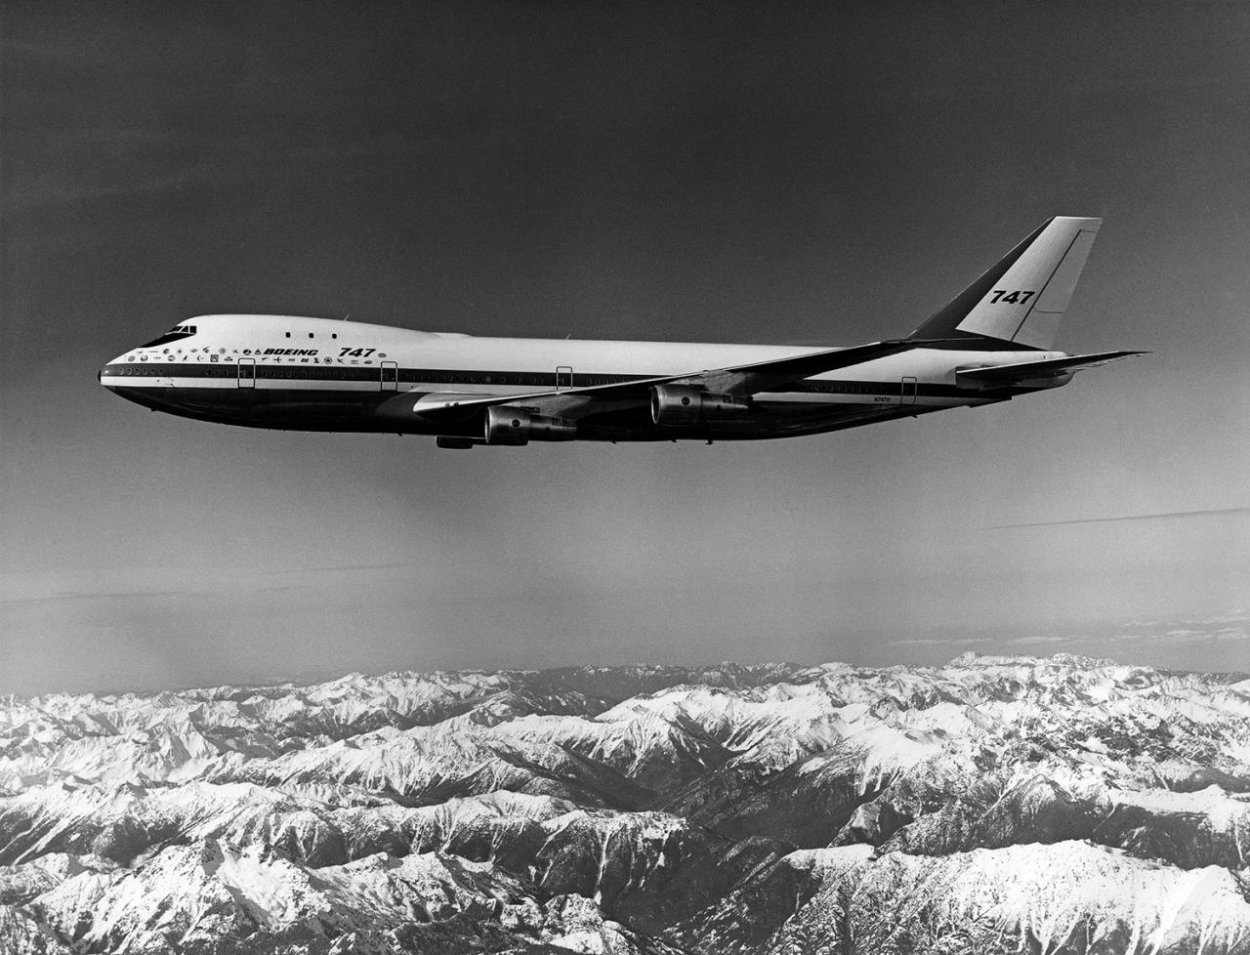 Boeing 747 – zrodenie legendy